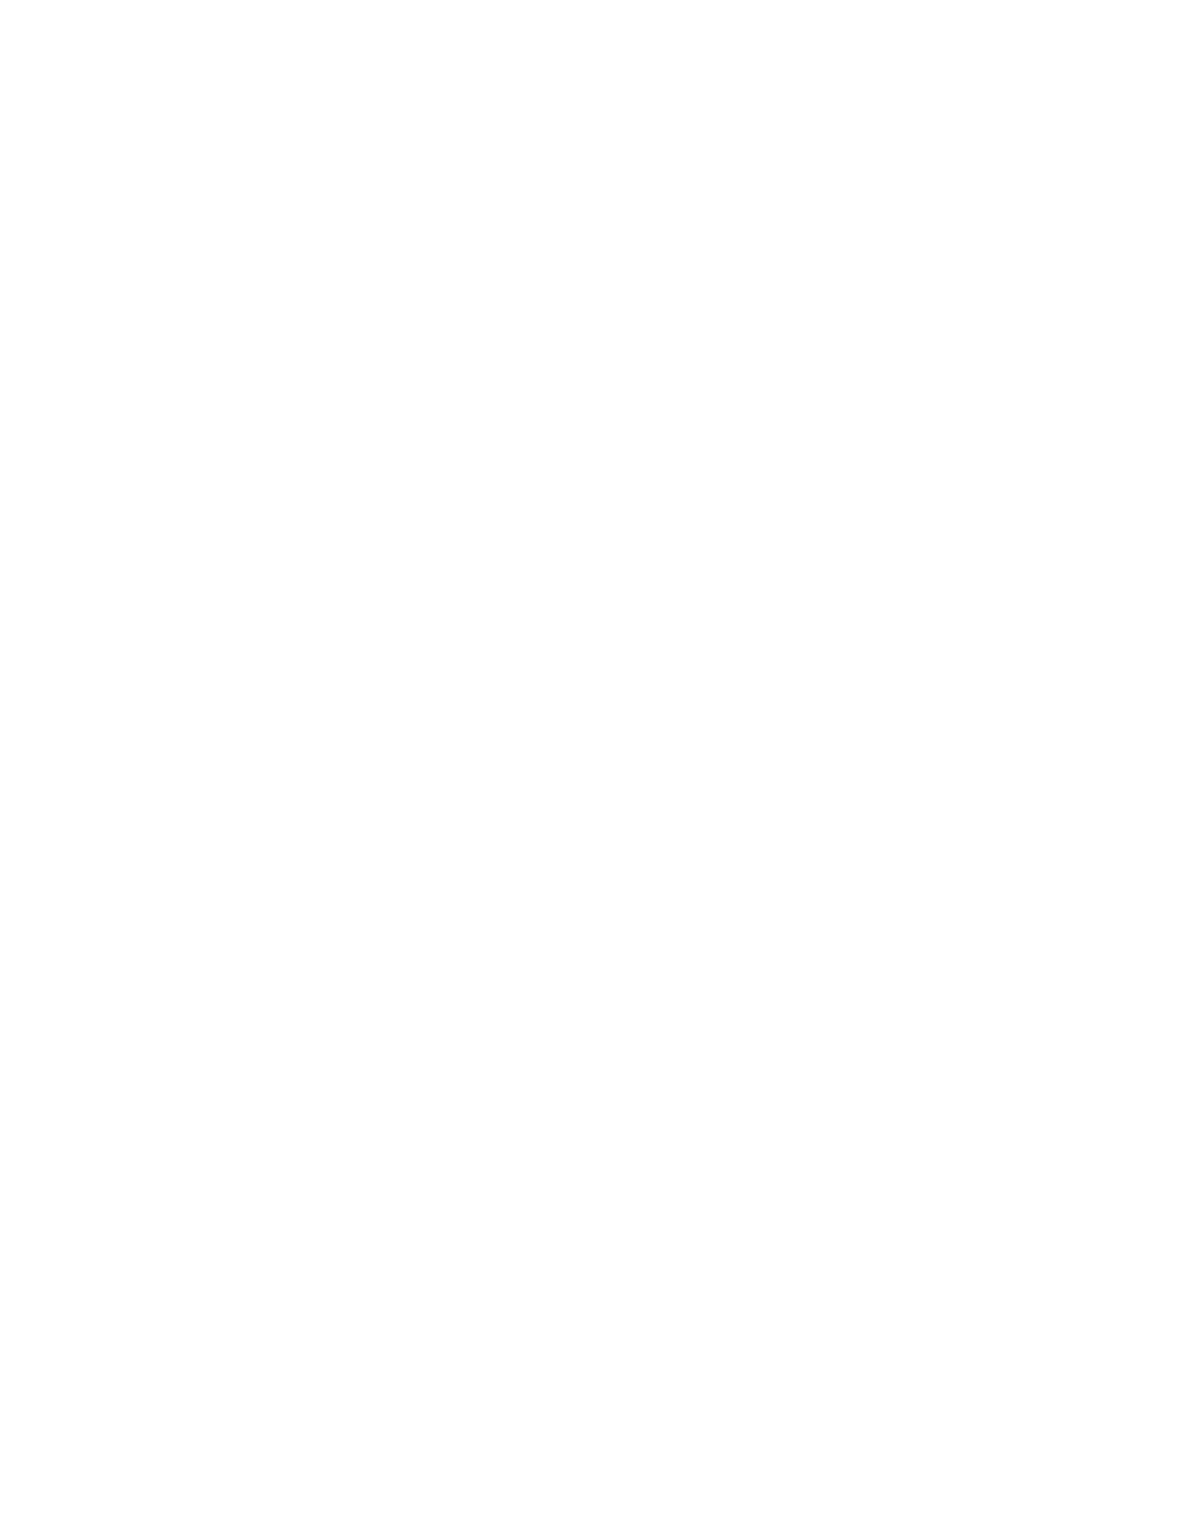 LEENO Industrial logo for dark backgrounds (transparent PNG)